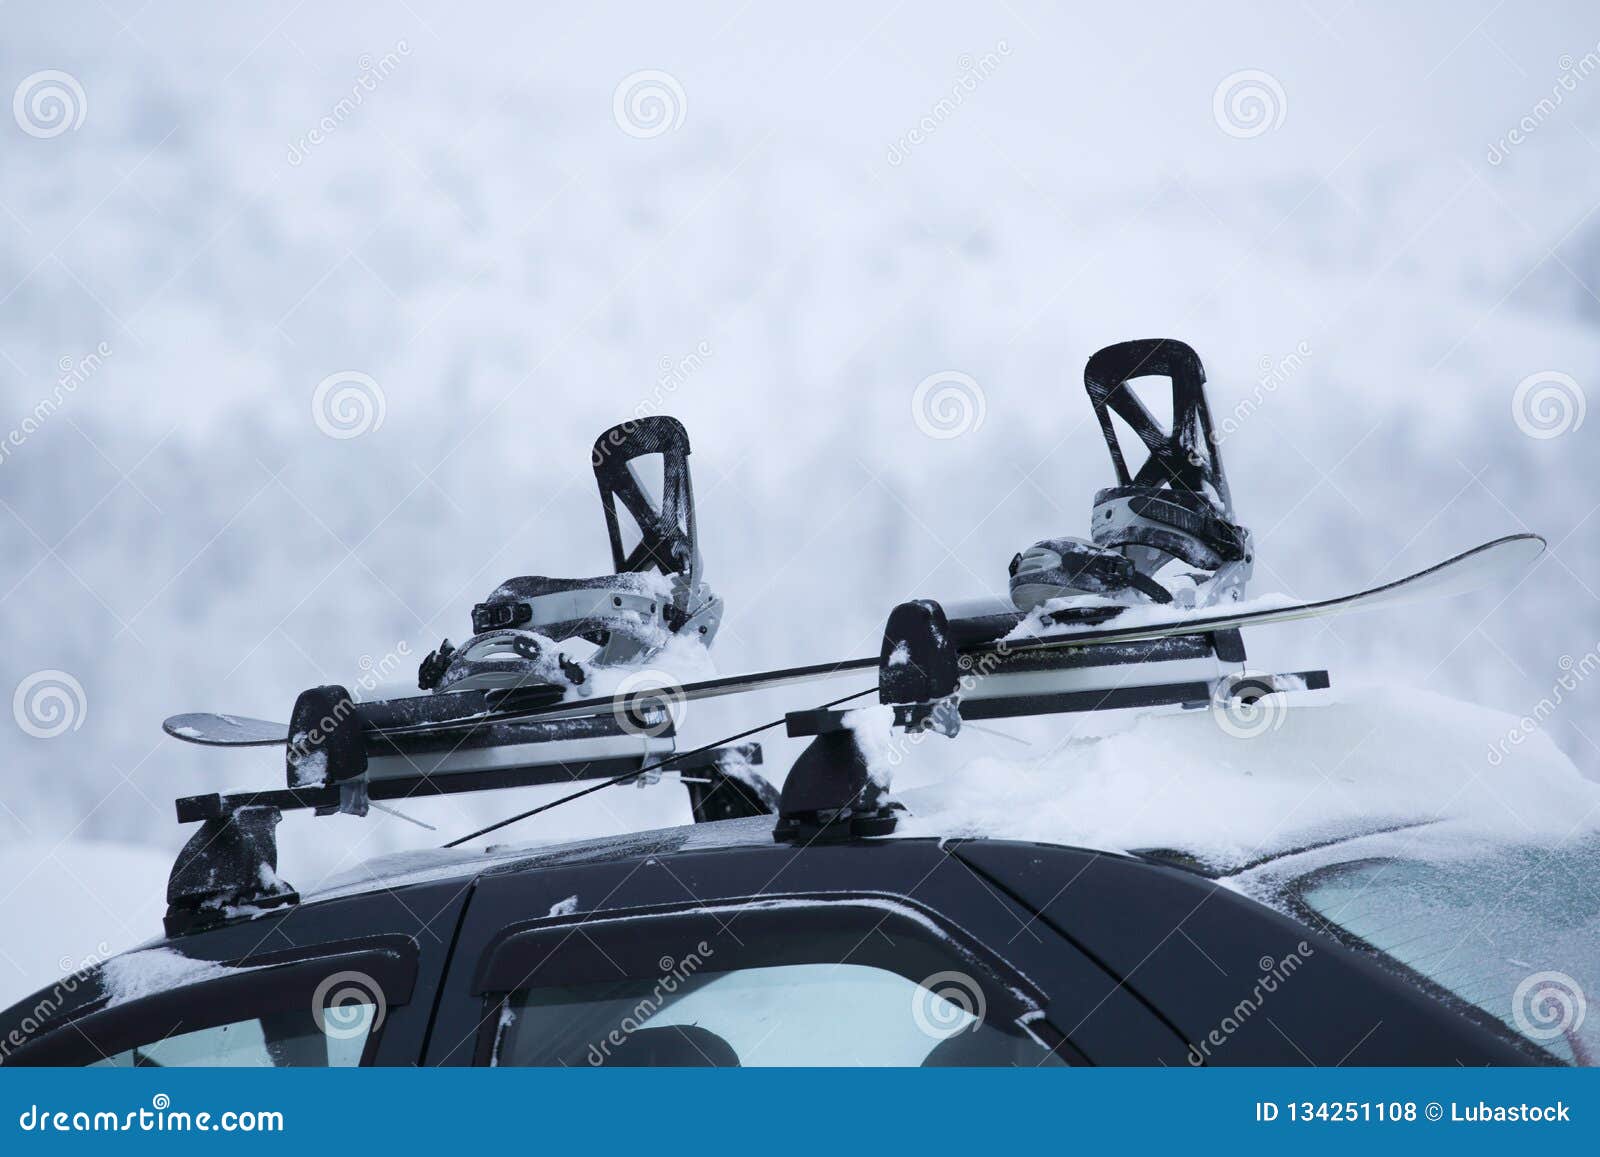 Voiture Avec Le Support De Ski Sur Le Dessus Photo stock - Image du  aventure, saison: 134251108